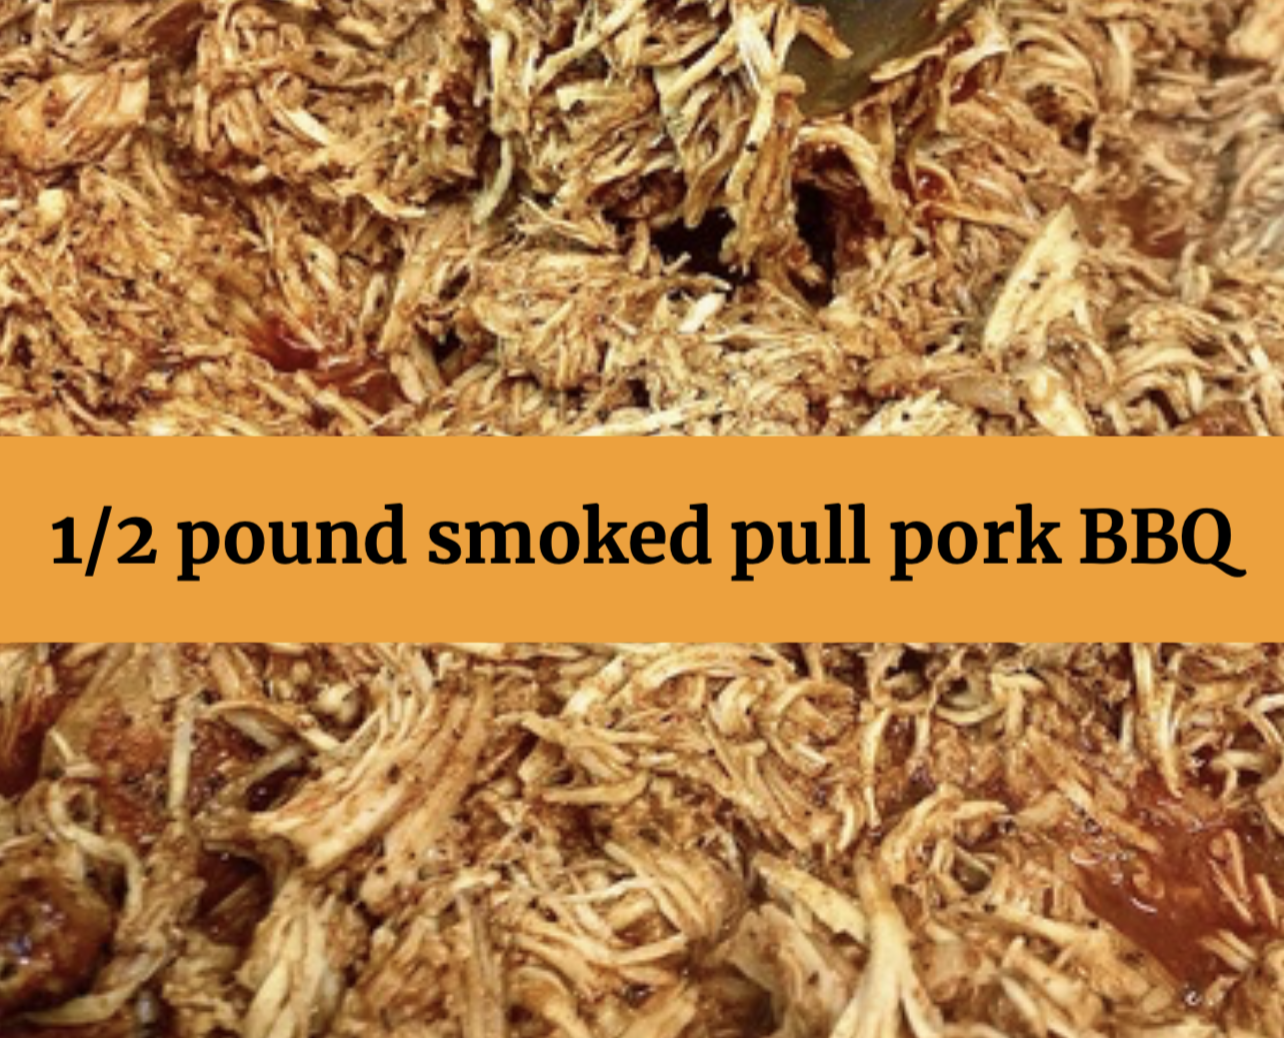 Pulled Pork BBQ 1/2 pound